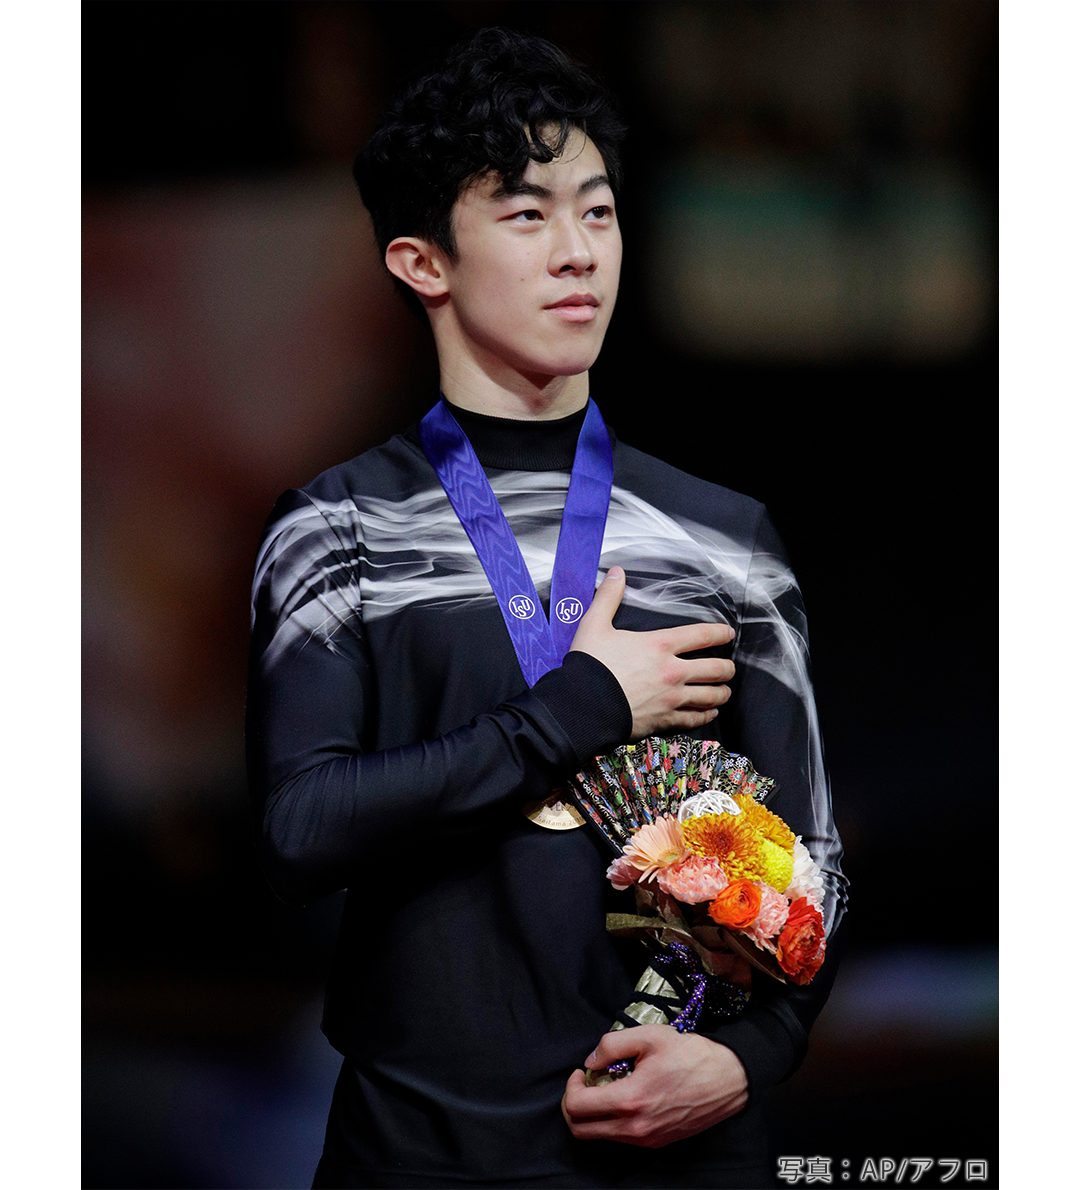 フィギュアスケート2019年世界選手権で優勝したネイサン・チェン選手